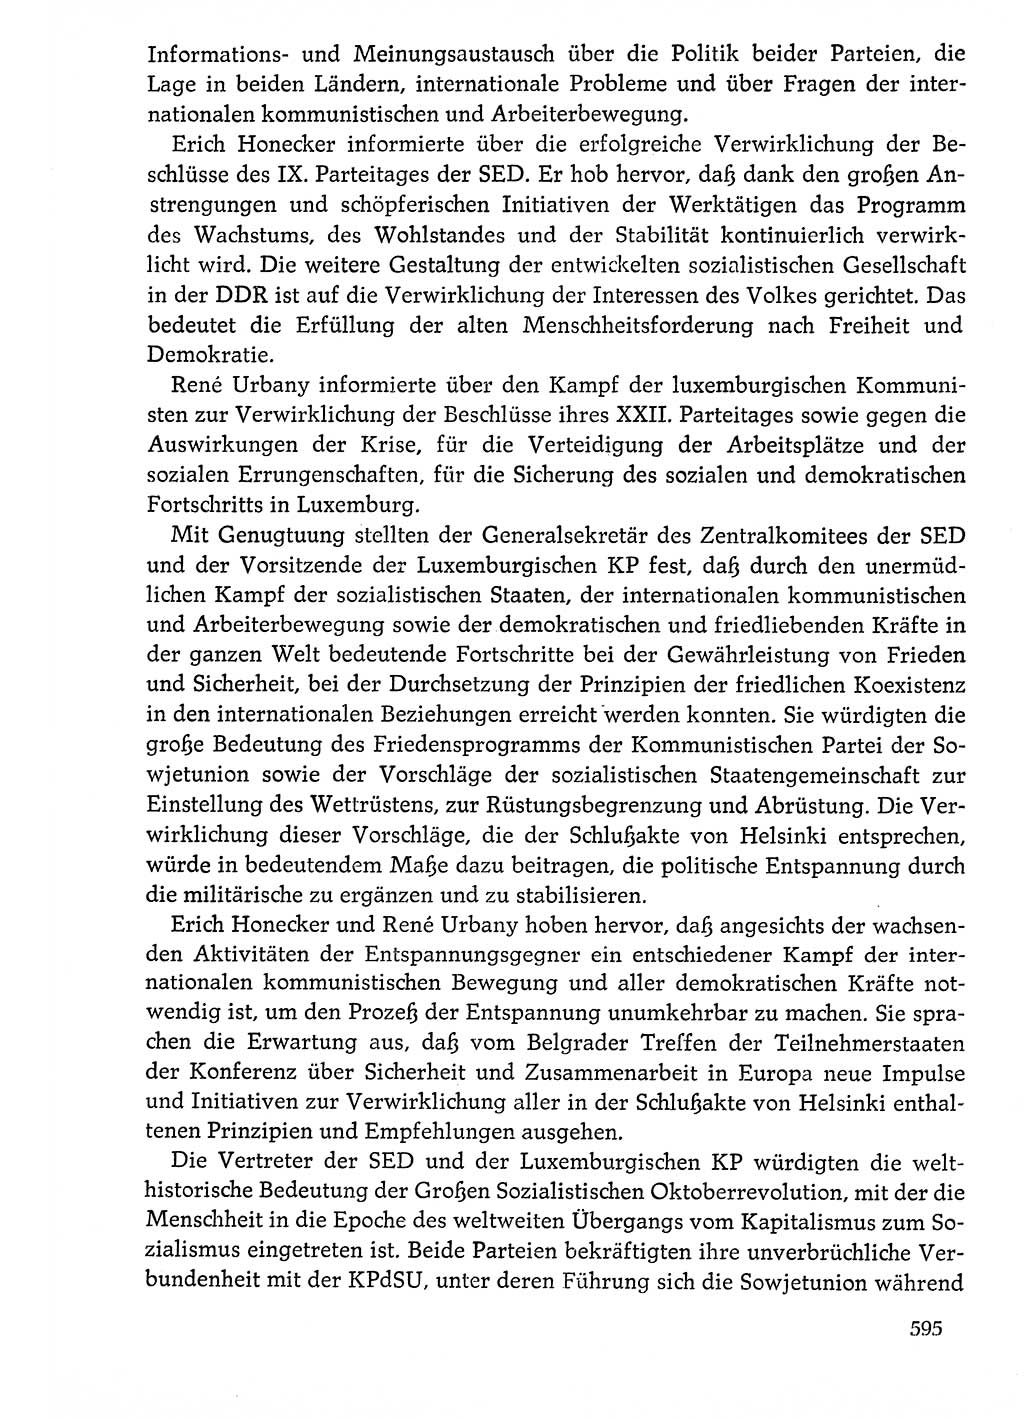 Dokumente der Sozialistischen Einheitspartei Deutschlands (SED) [Deutsche Demokratische Republik (DDR)] 1976-1977, Seite 595 (Dok. SED DDR 1976-1977, S. 595)